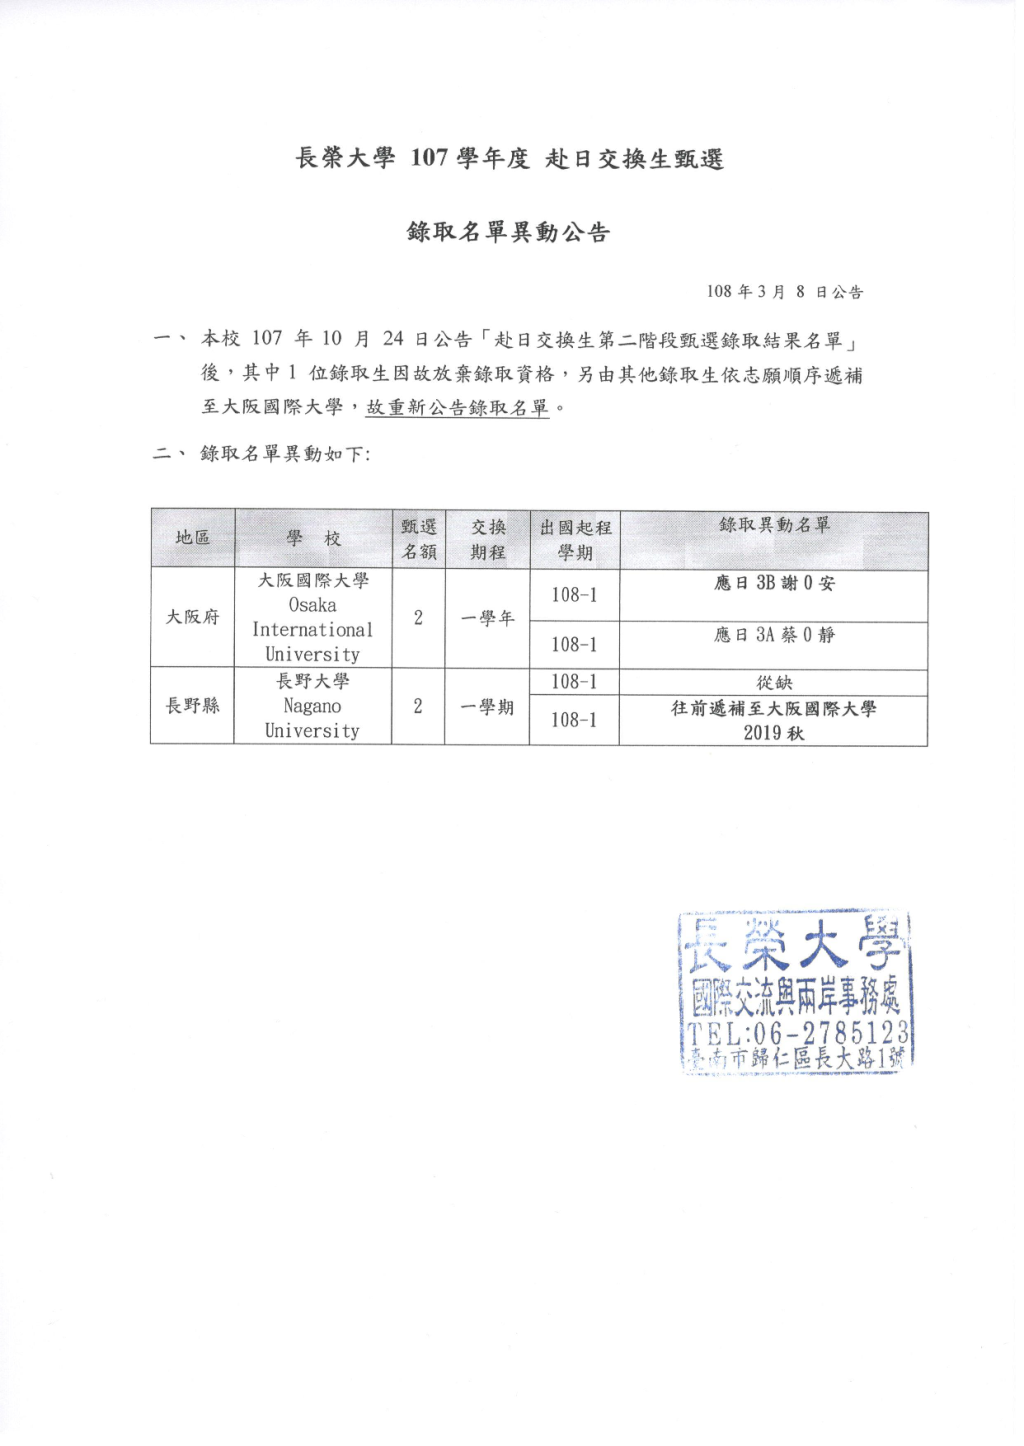 長榮大學107學年度赴日交換生甄選錄取名單異動公告